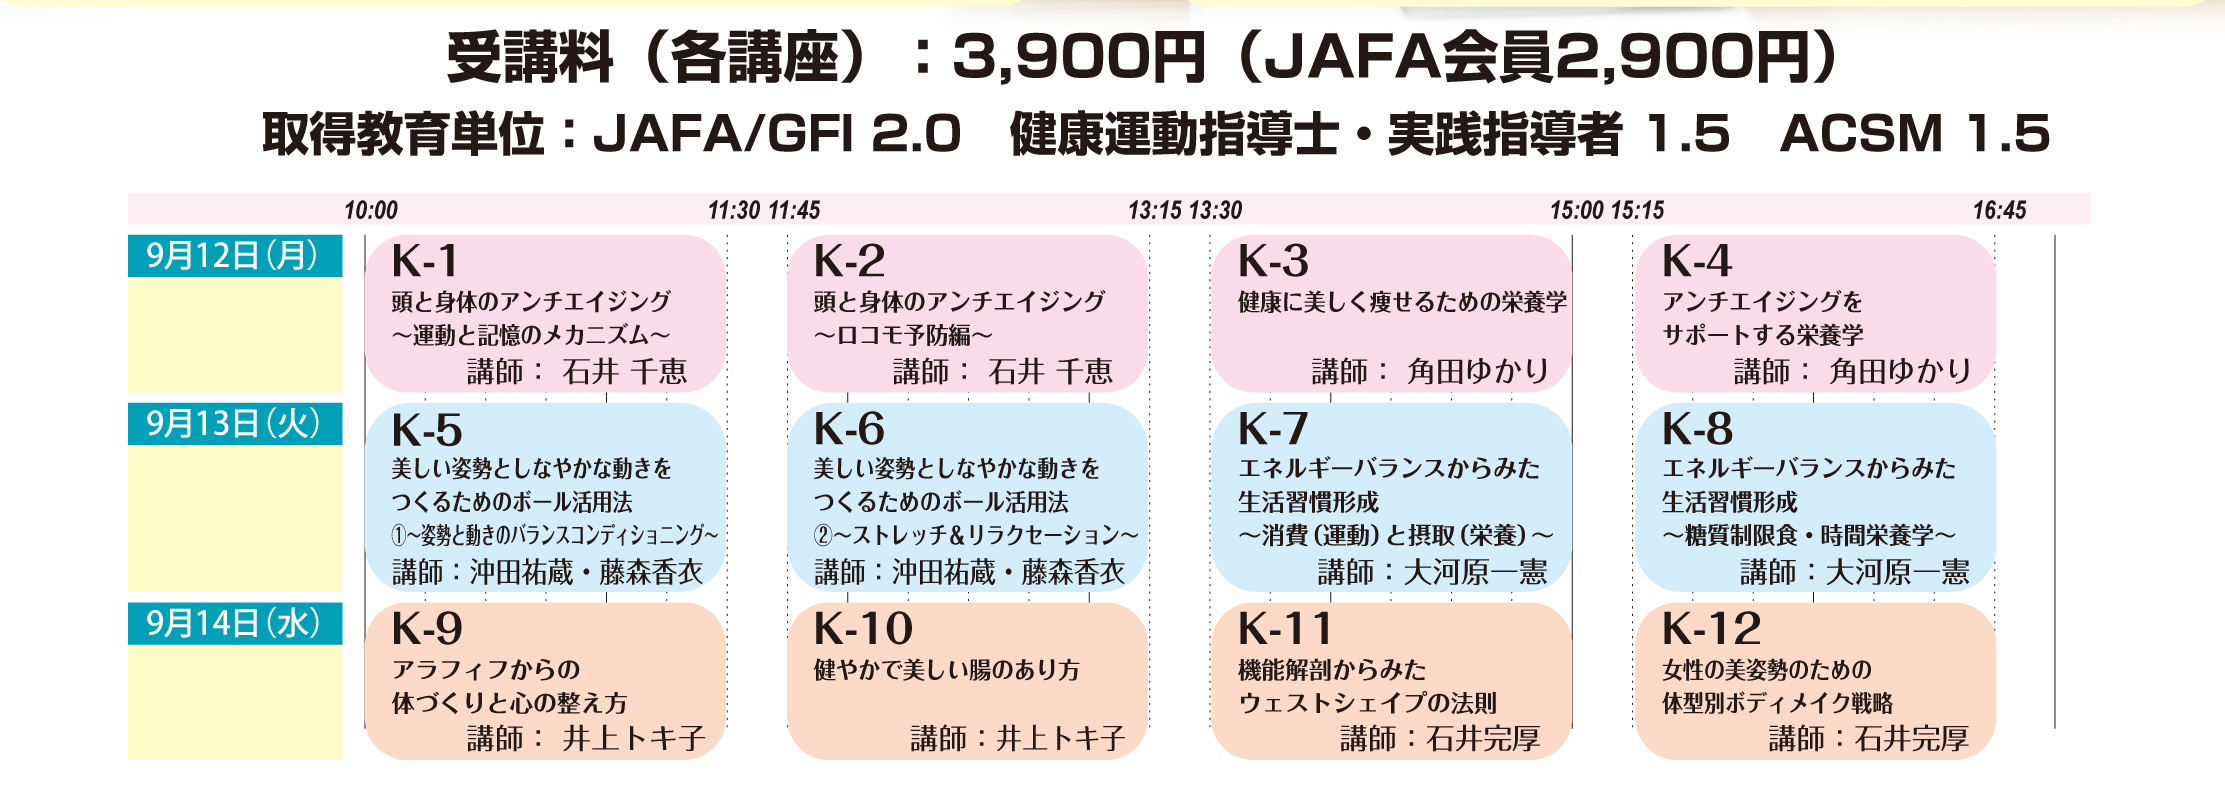 http://www.jafanet.jp/event/%E3%82%AB%E3%83%AC%E3%83%83%E3%82%B82016time.jpg